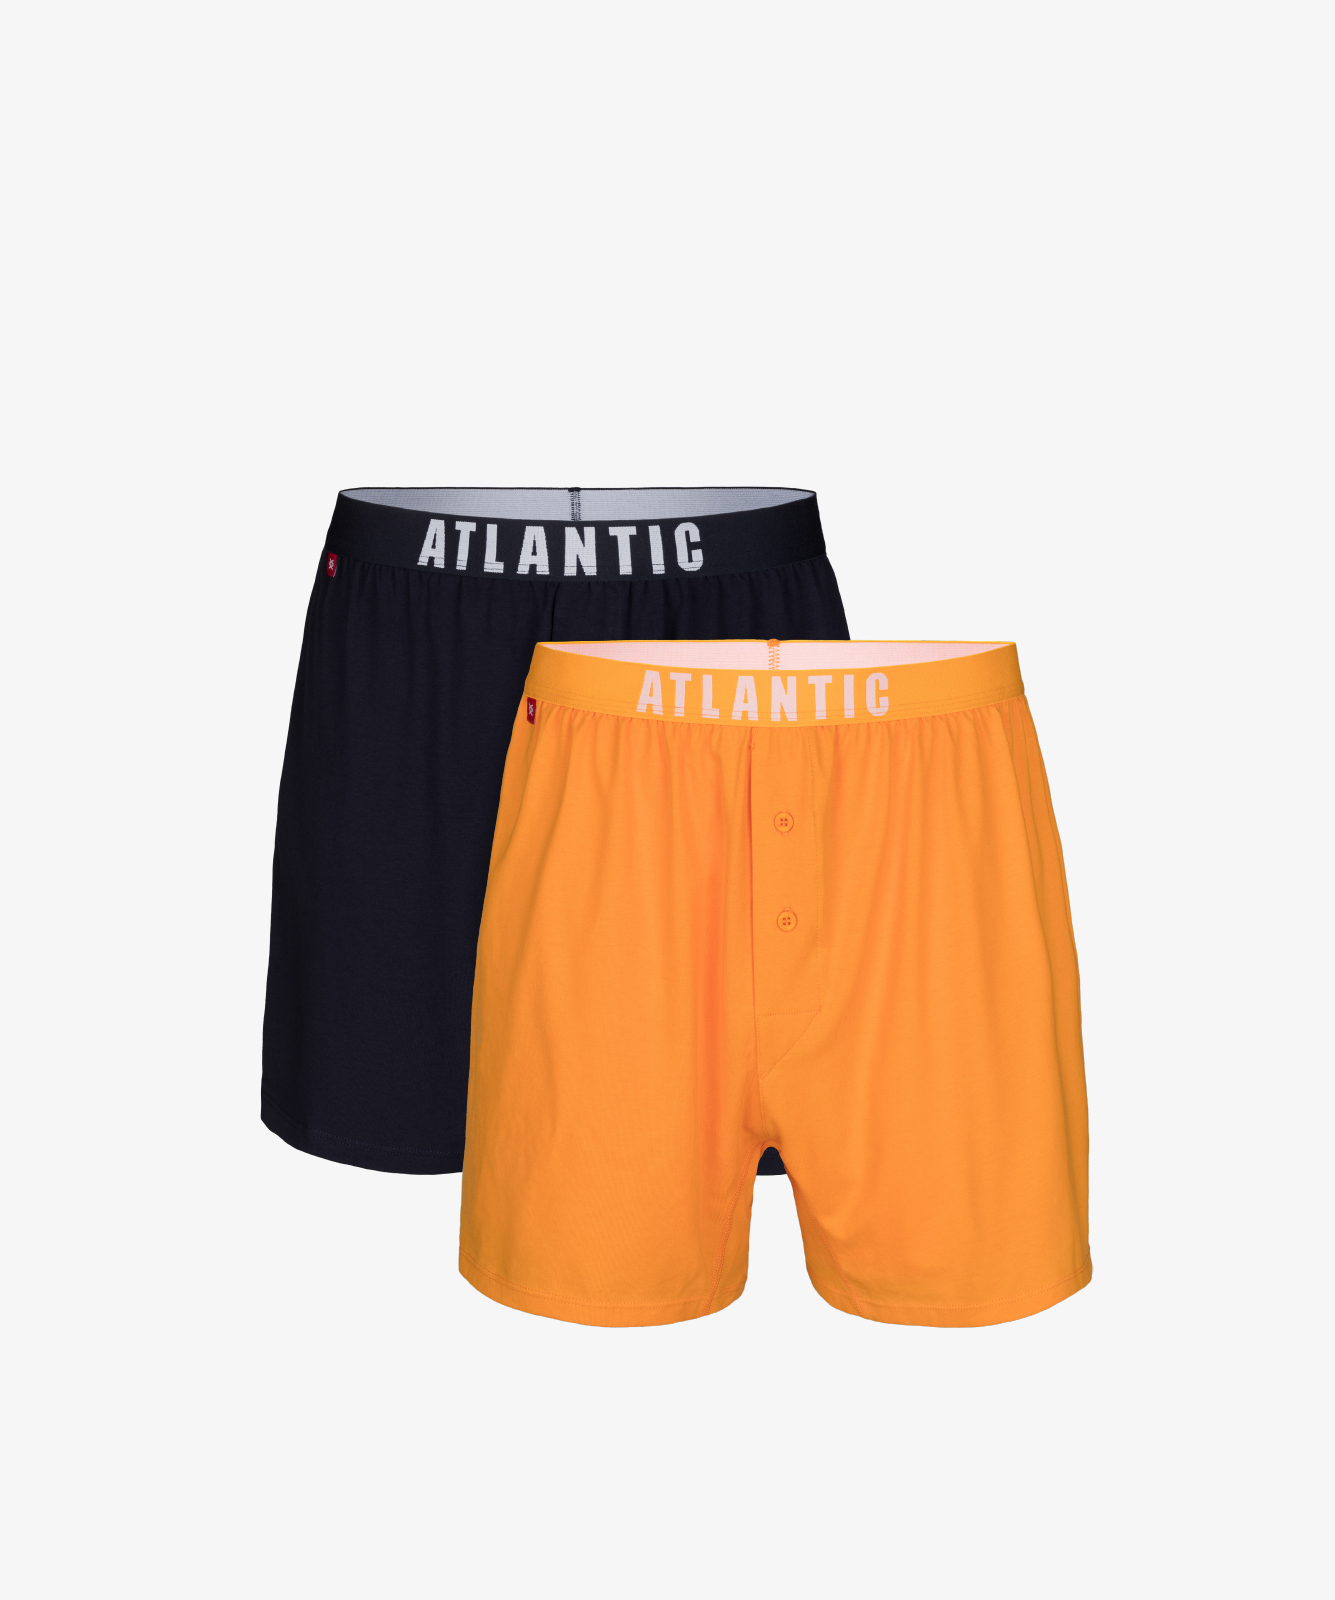 Мужские трусы боксеры Atlantic, набор из 2 шт., хлопок, темно-синие + желтые, 2MBX-025